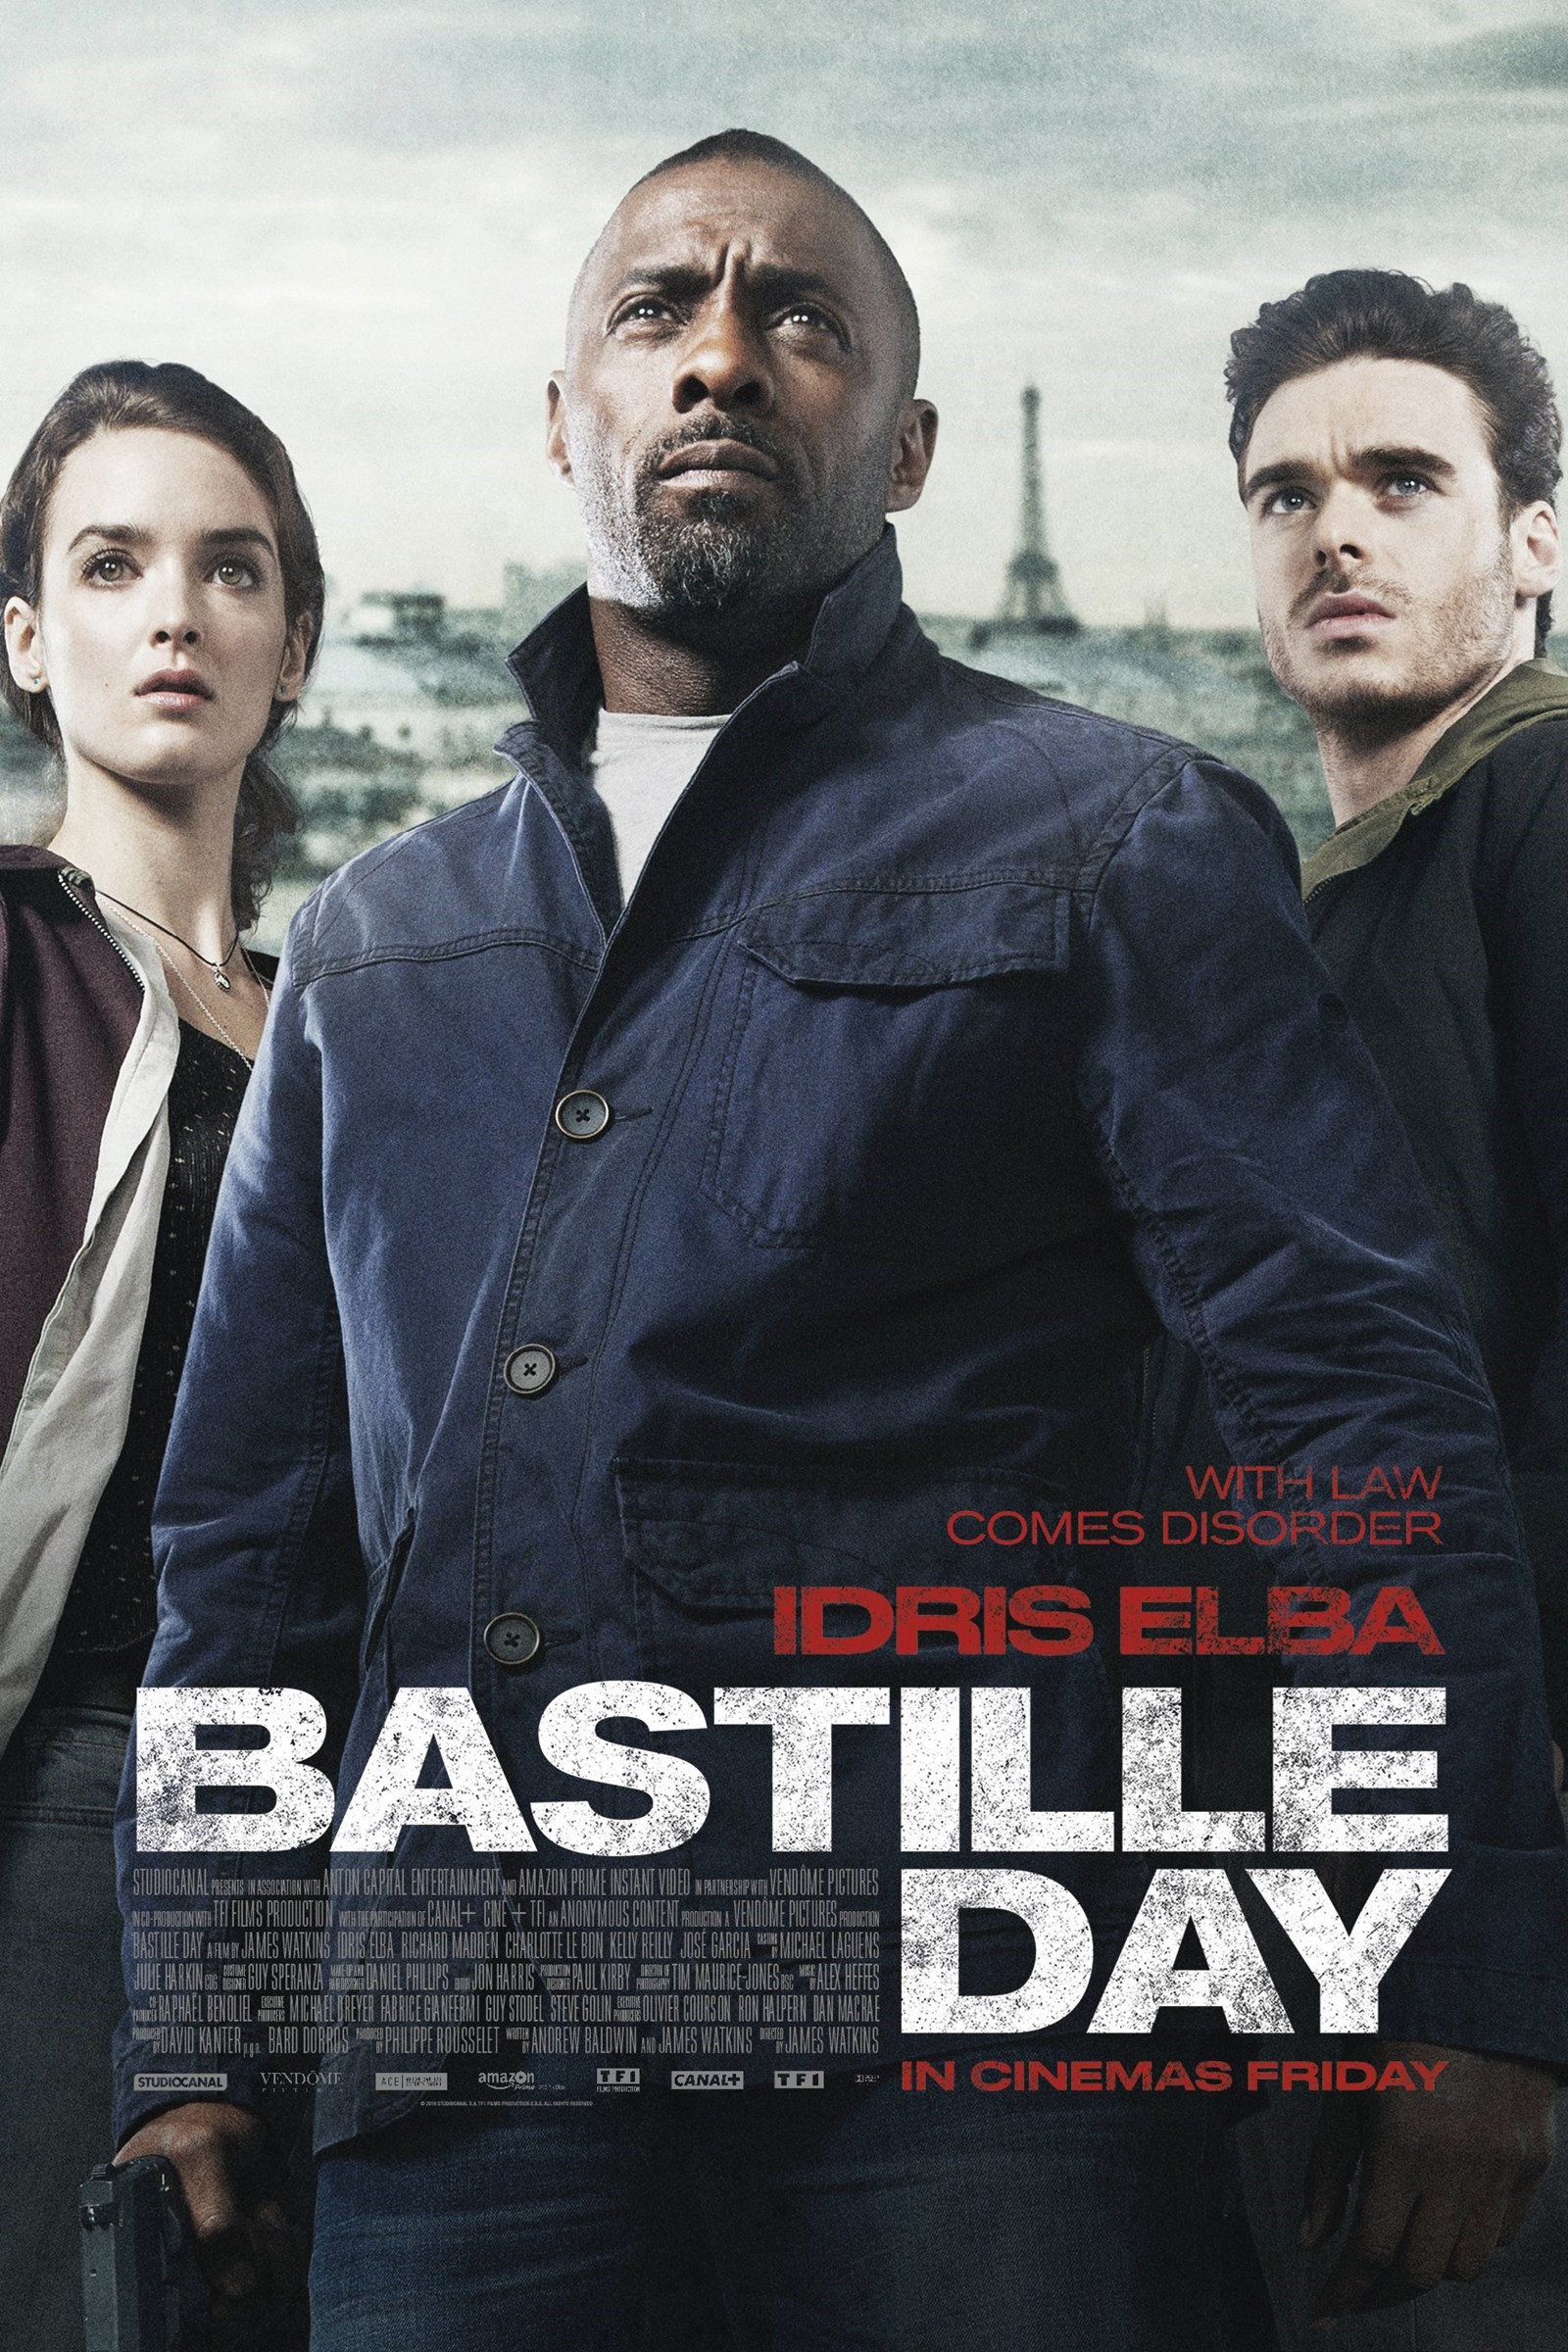 دانلود فیلم Bastille Day 2016